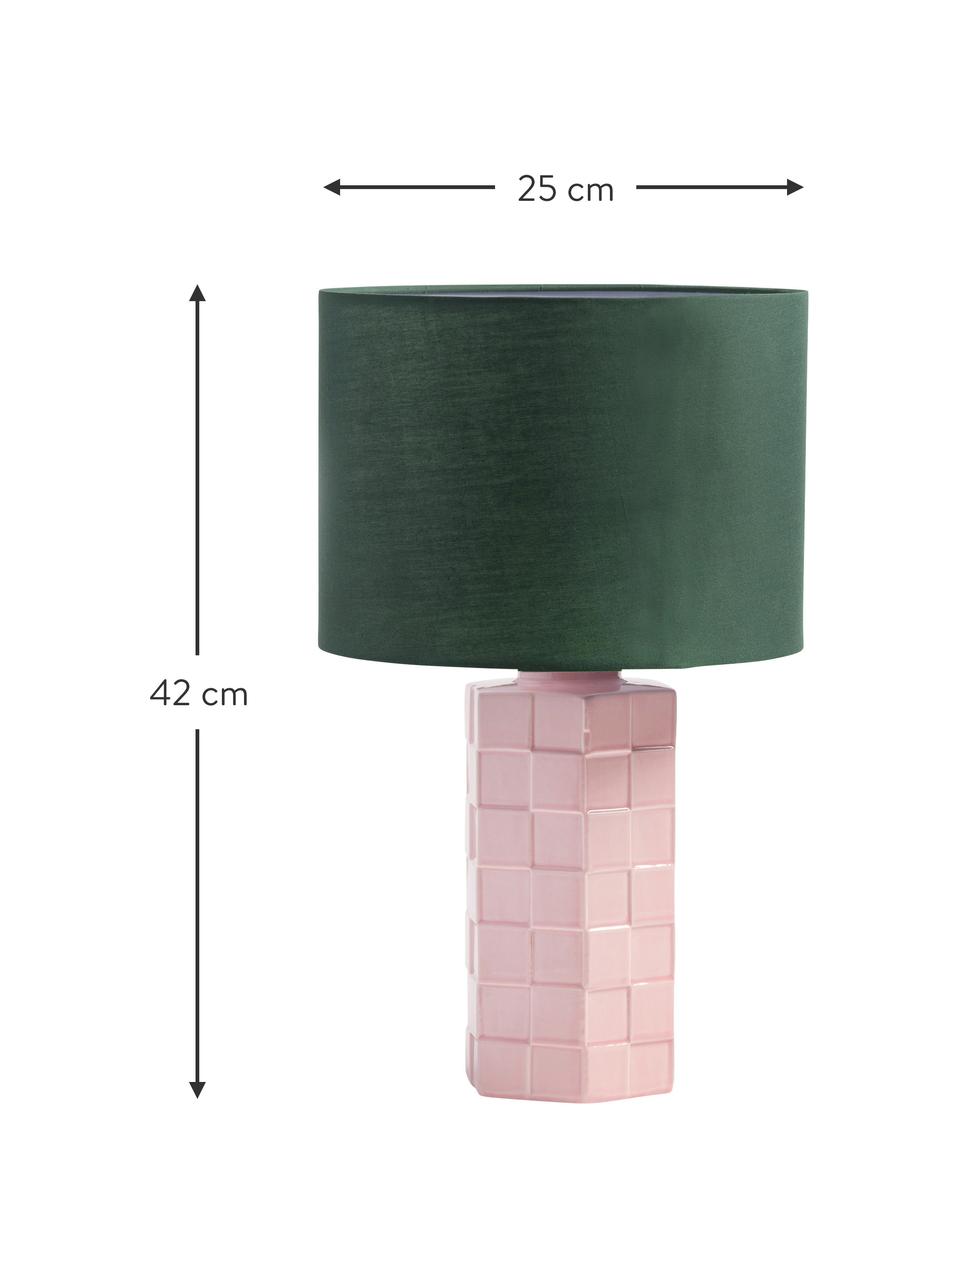 Tischlampe Check mit karierter Oberfläche, Lampenschirm: Baumwolle, Lampenfuß: Steingut, Grün, Hellrosa, Ø 25 x H 42 cm